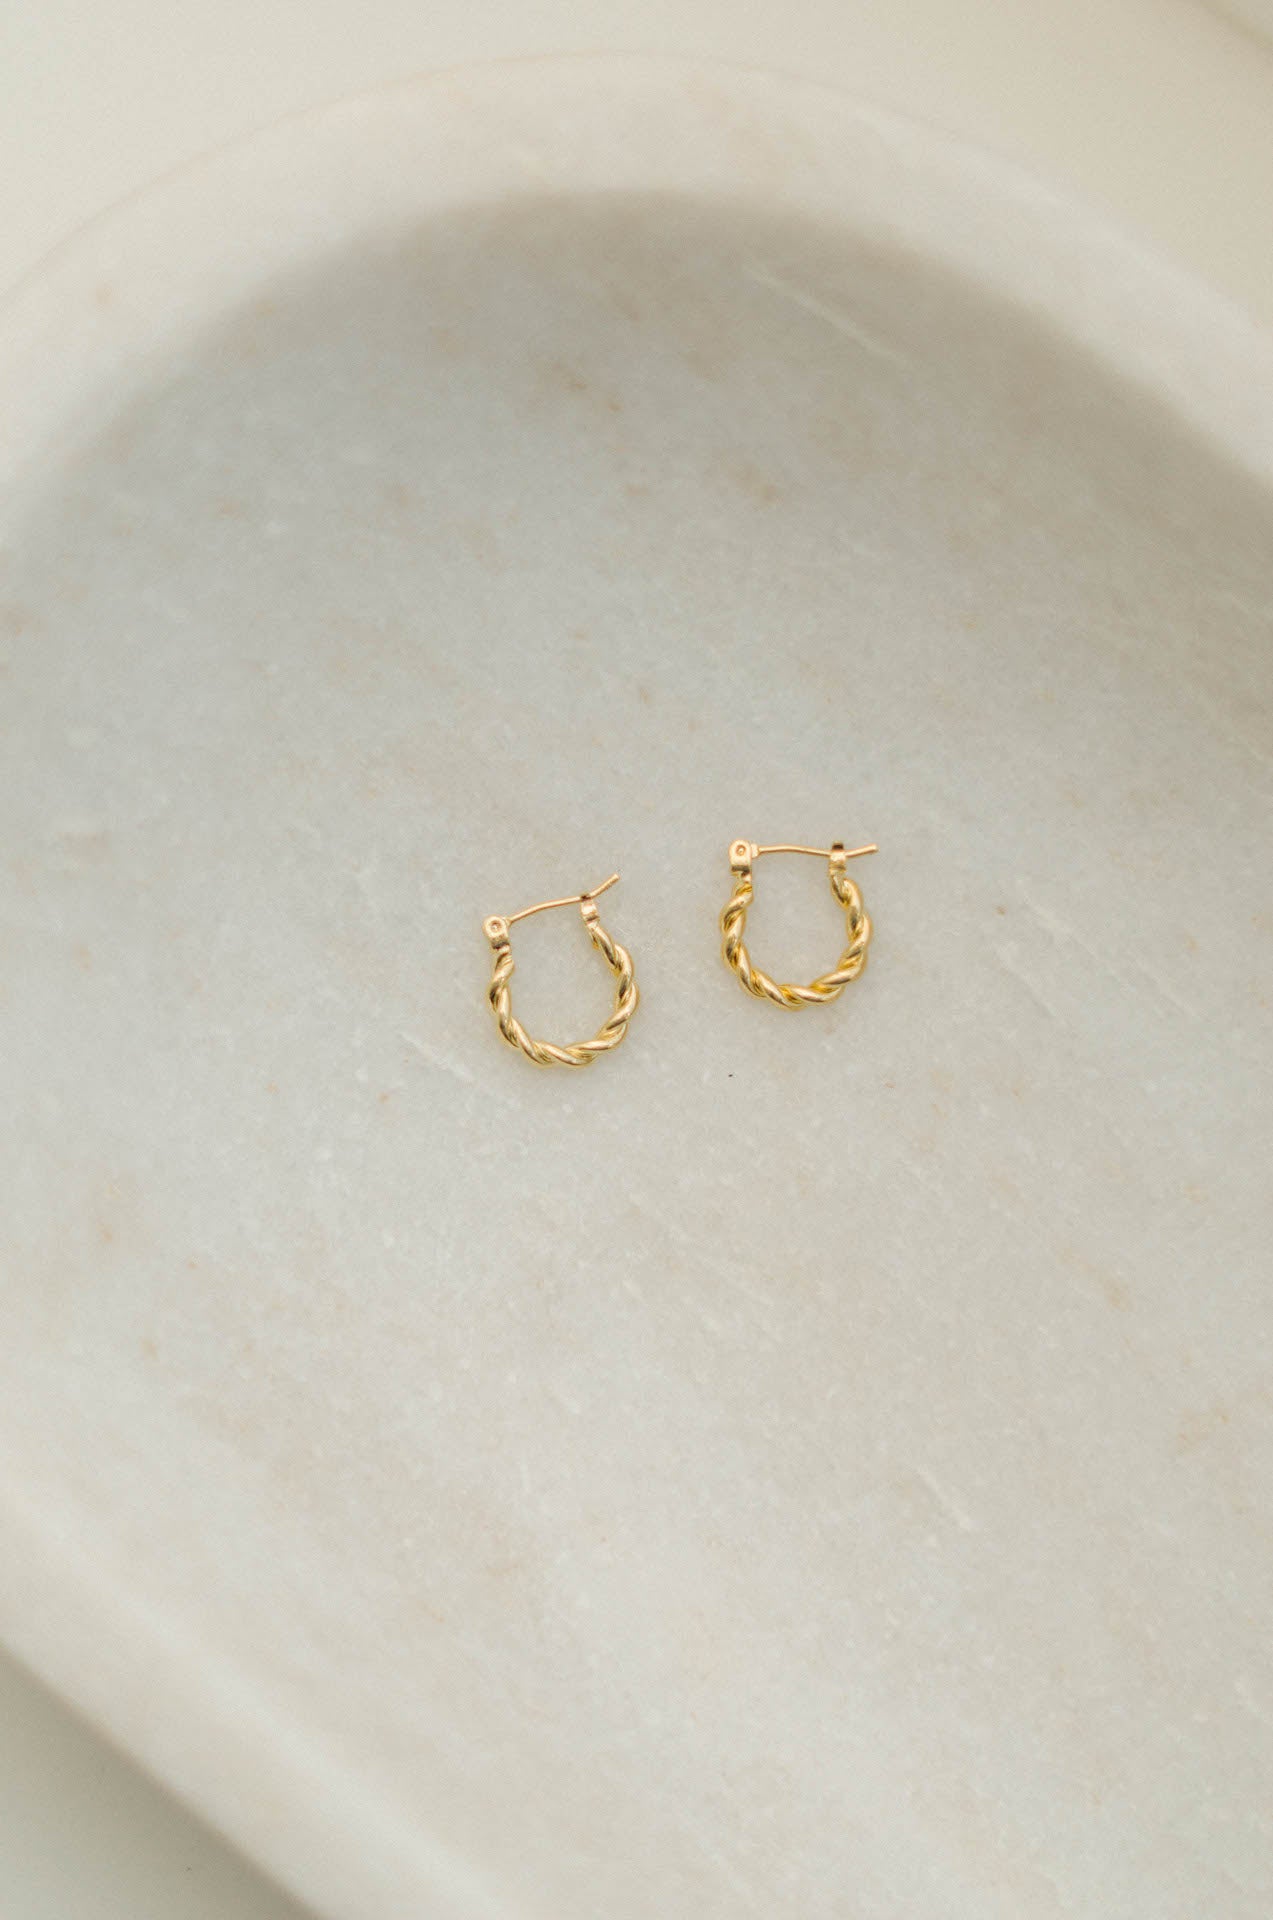 waterproof 14k gold plated twisted hoop earrings